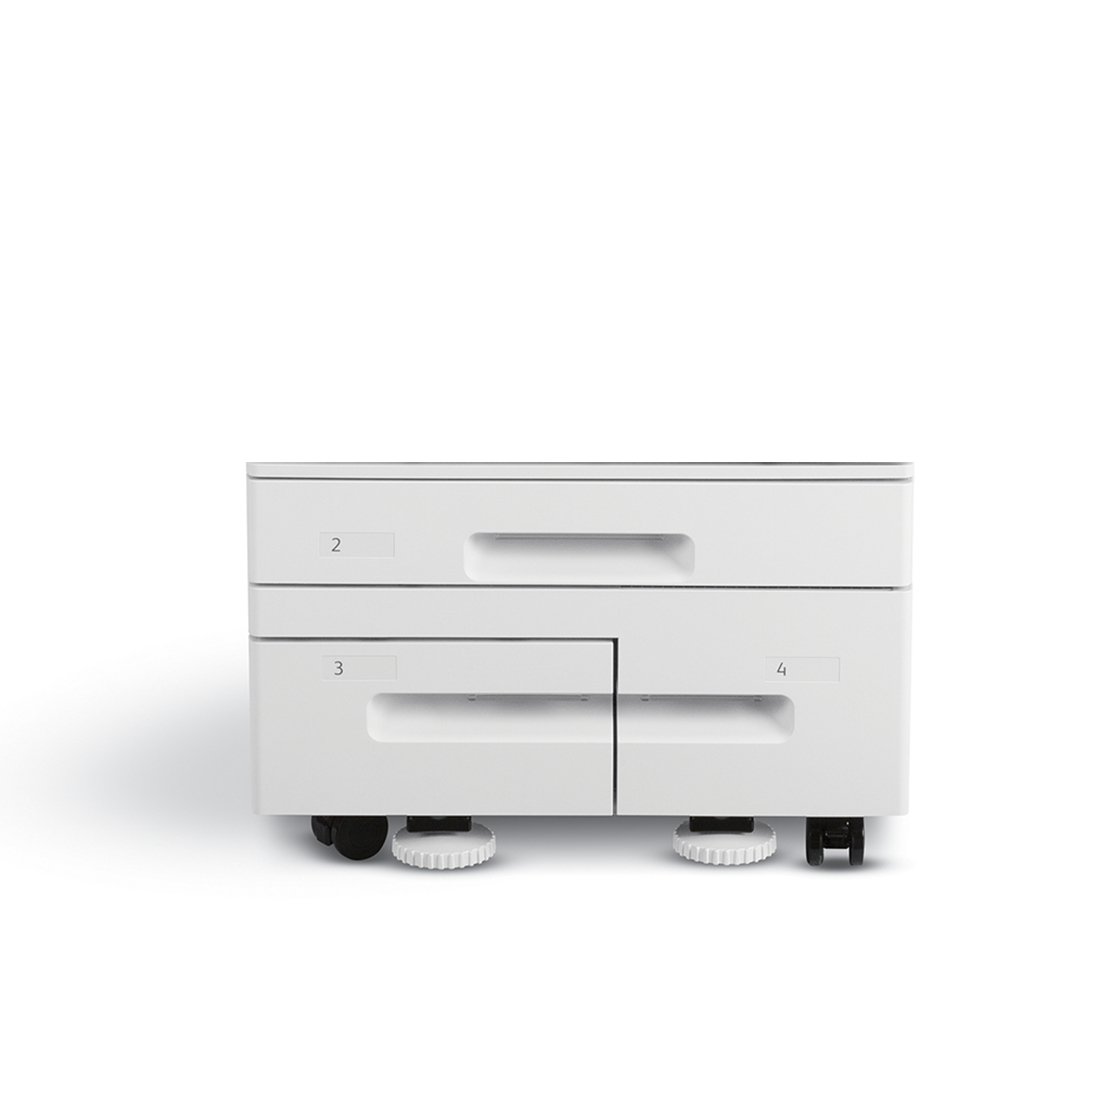 Тандемный модуль большой емкости, Xerox, 097S04909, для настольной конфигурации, 520 листов А3 + 2000 листов А4, максимальная плотность бумаги 256 гр/см3